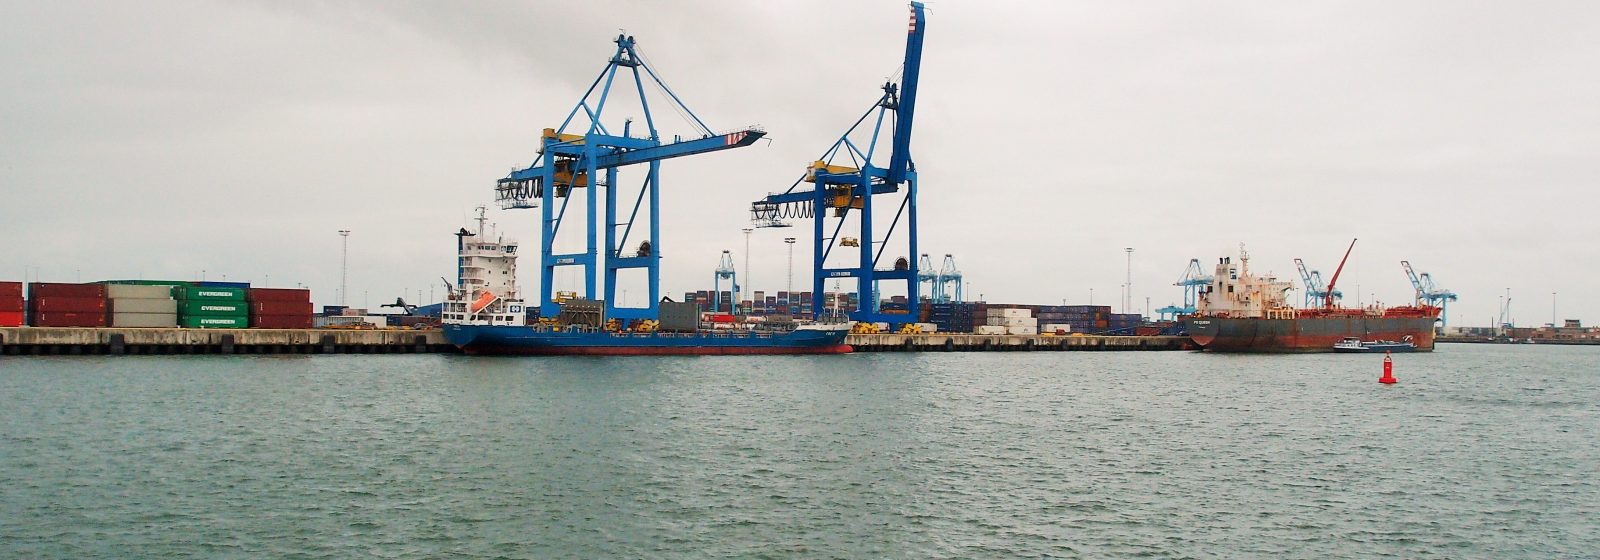 20210826 Zeebrugge containerkranen CHZ